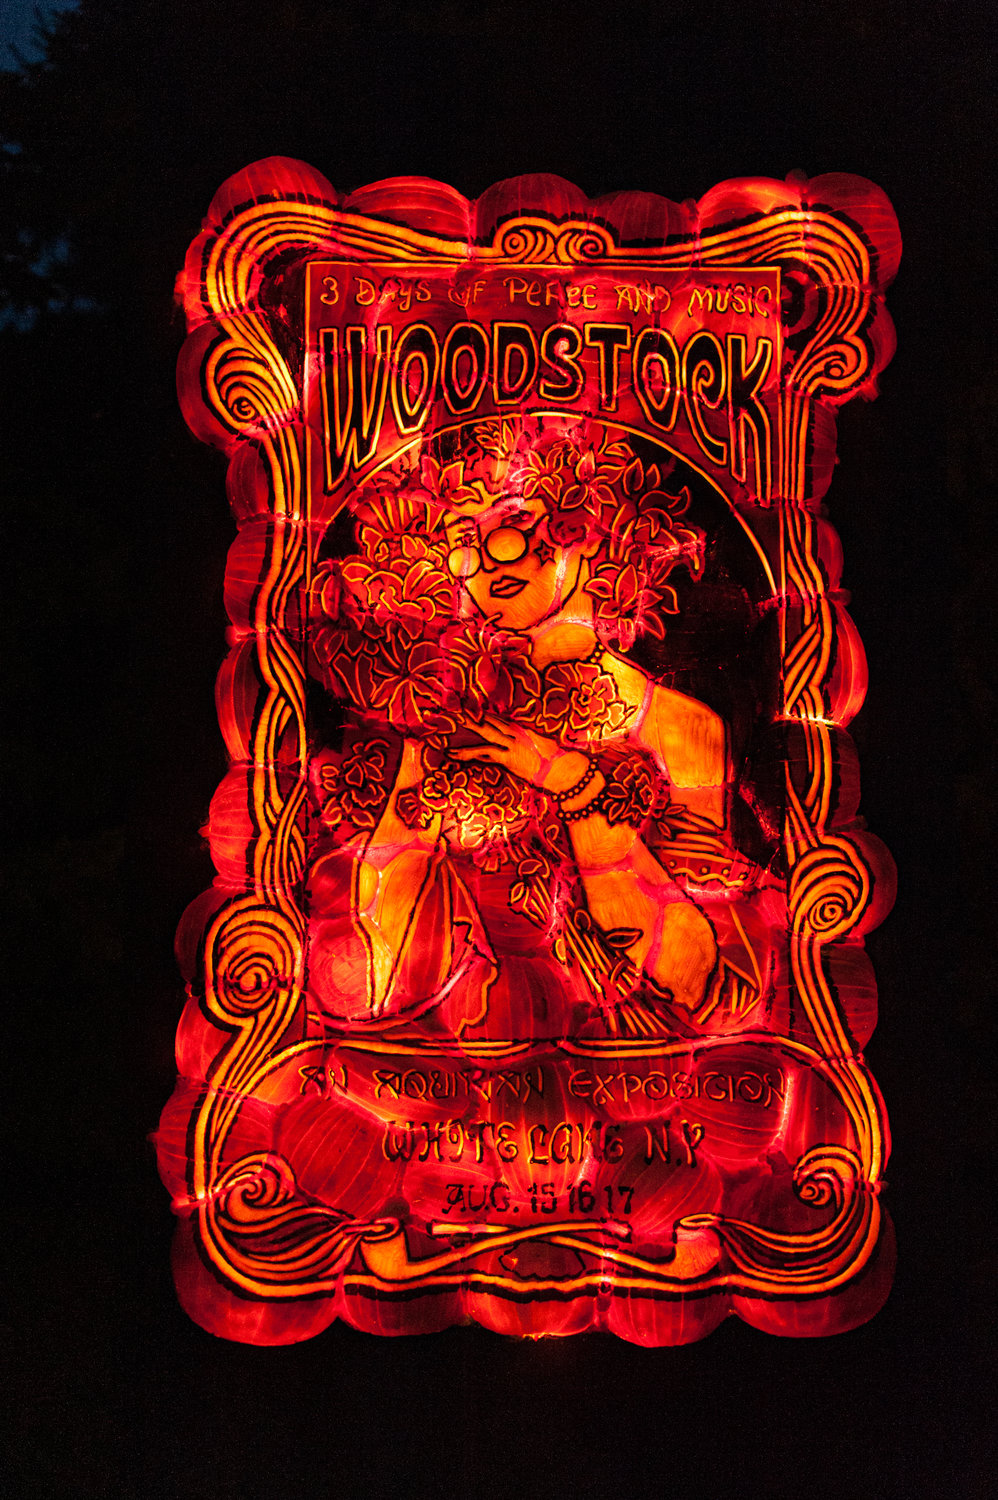 Glowing and groovy Woodstock pumpkin art on display.